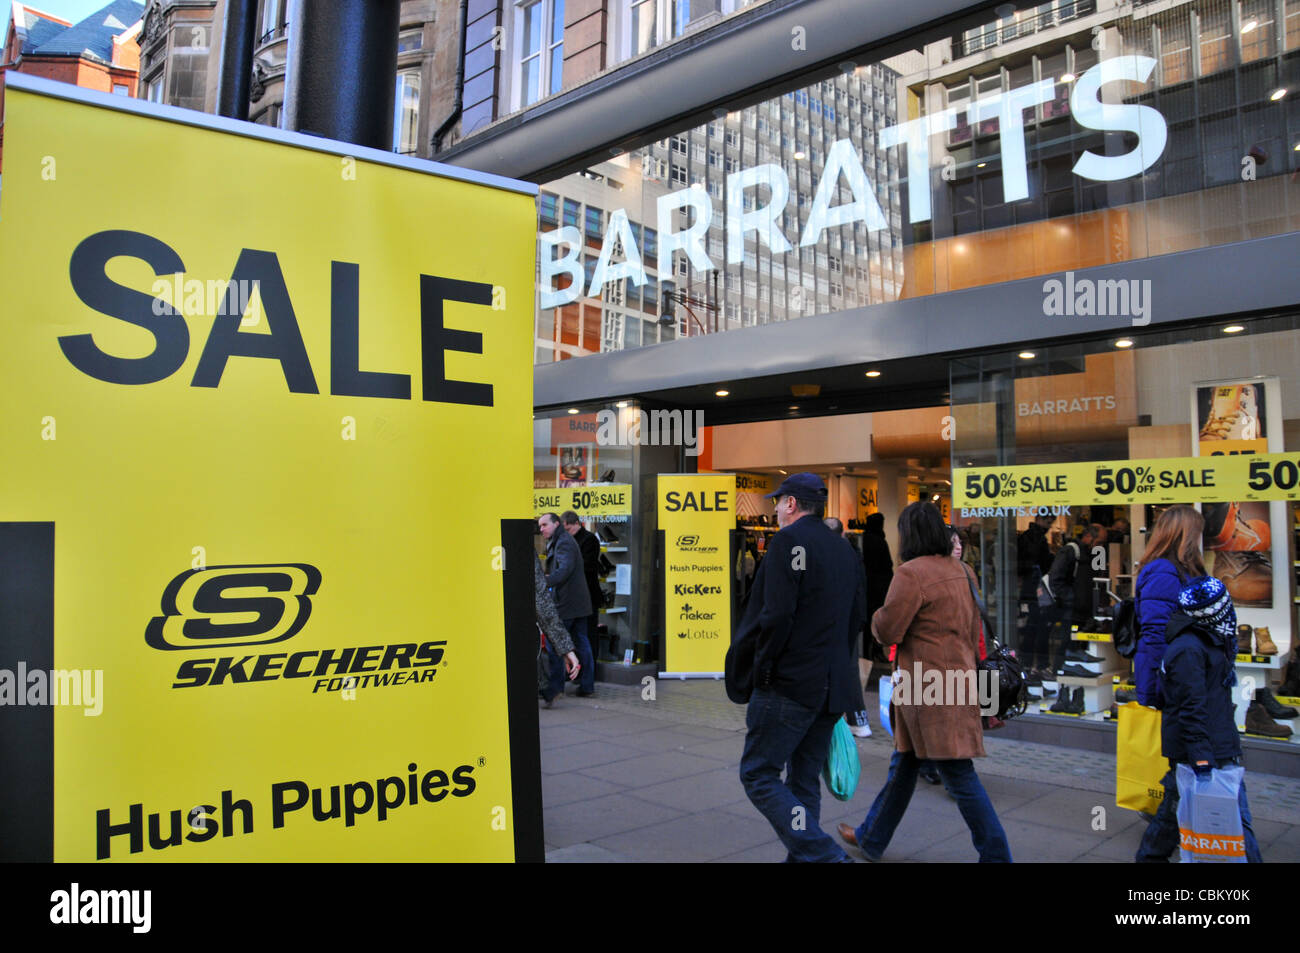 Barratts negozio di scarpe Oxford Street London chiudendo la vendita di Natale vendite sconti Foto Stock